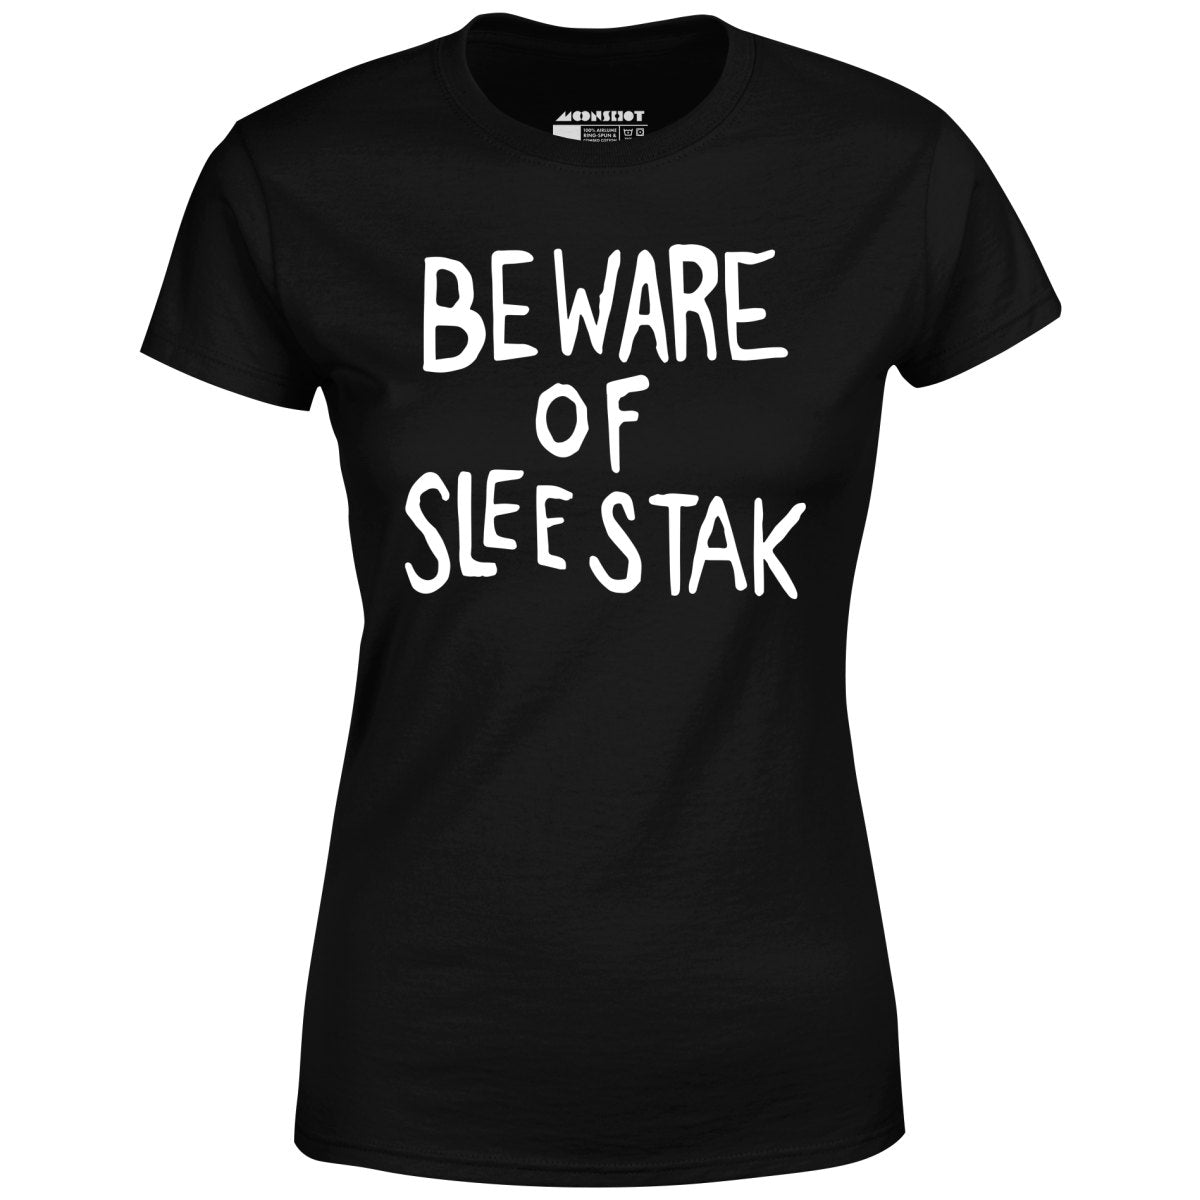 Beware of Sleestak - Women's T-Shirt